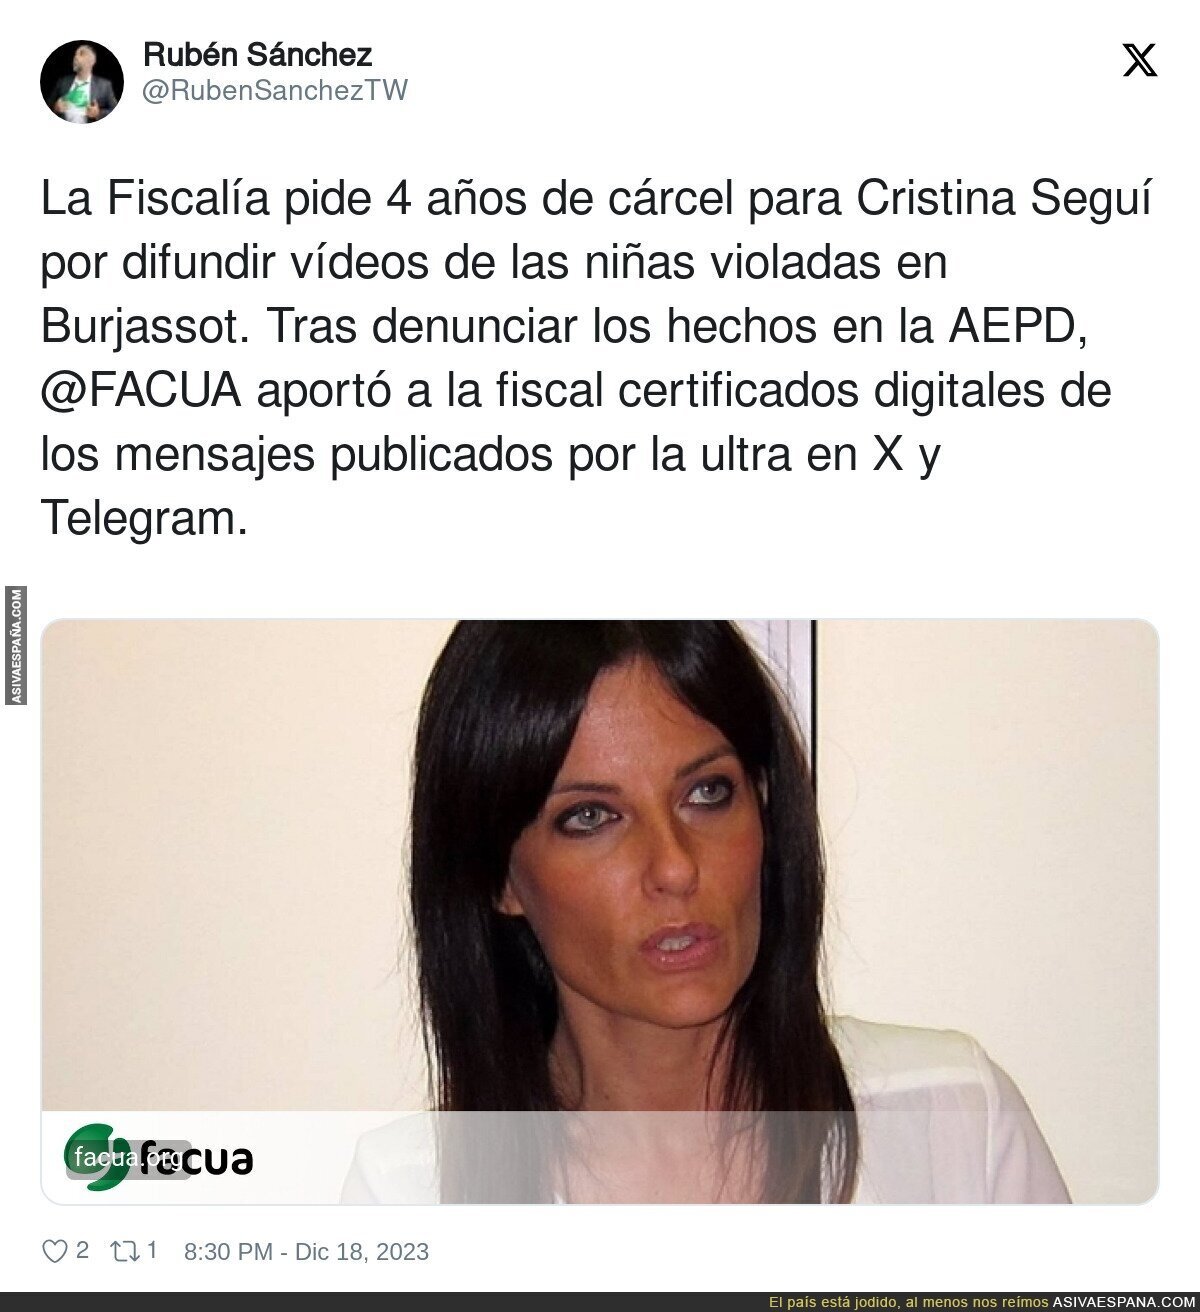 Cristina Seguí está en problemas